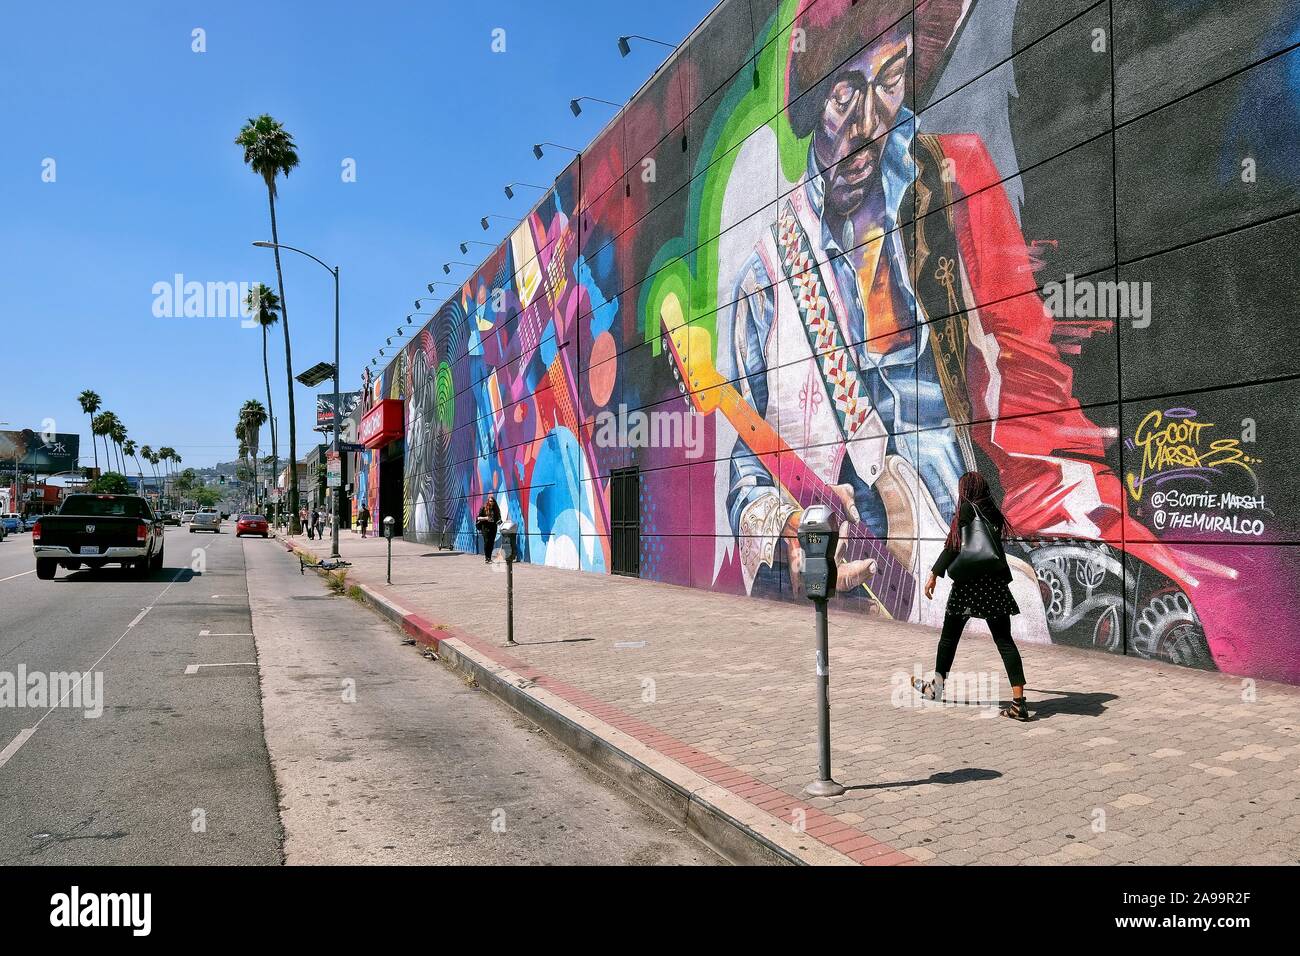 Fresque grandeur nature avec Jimi Hendrix à la guitare Center music store, Sunset Boulevard, Hollywood, Los Angeles, Californie, USA Banque D'Images